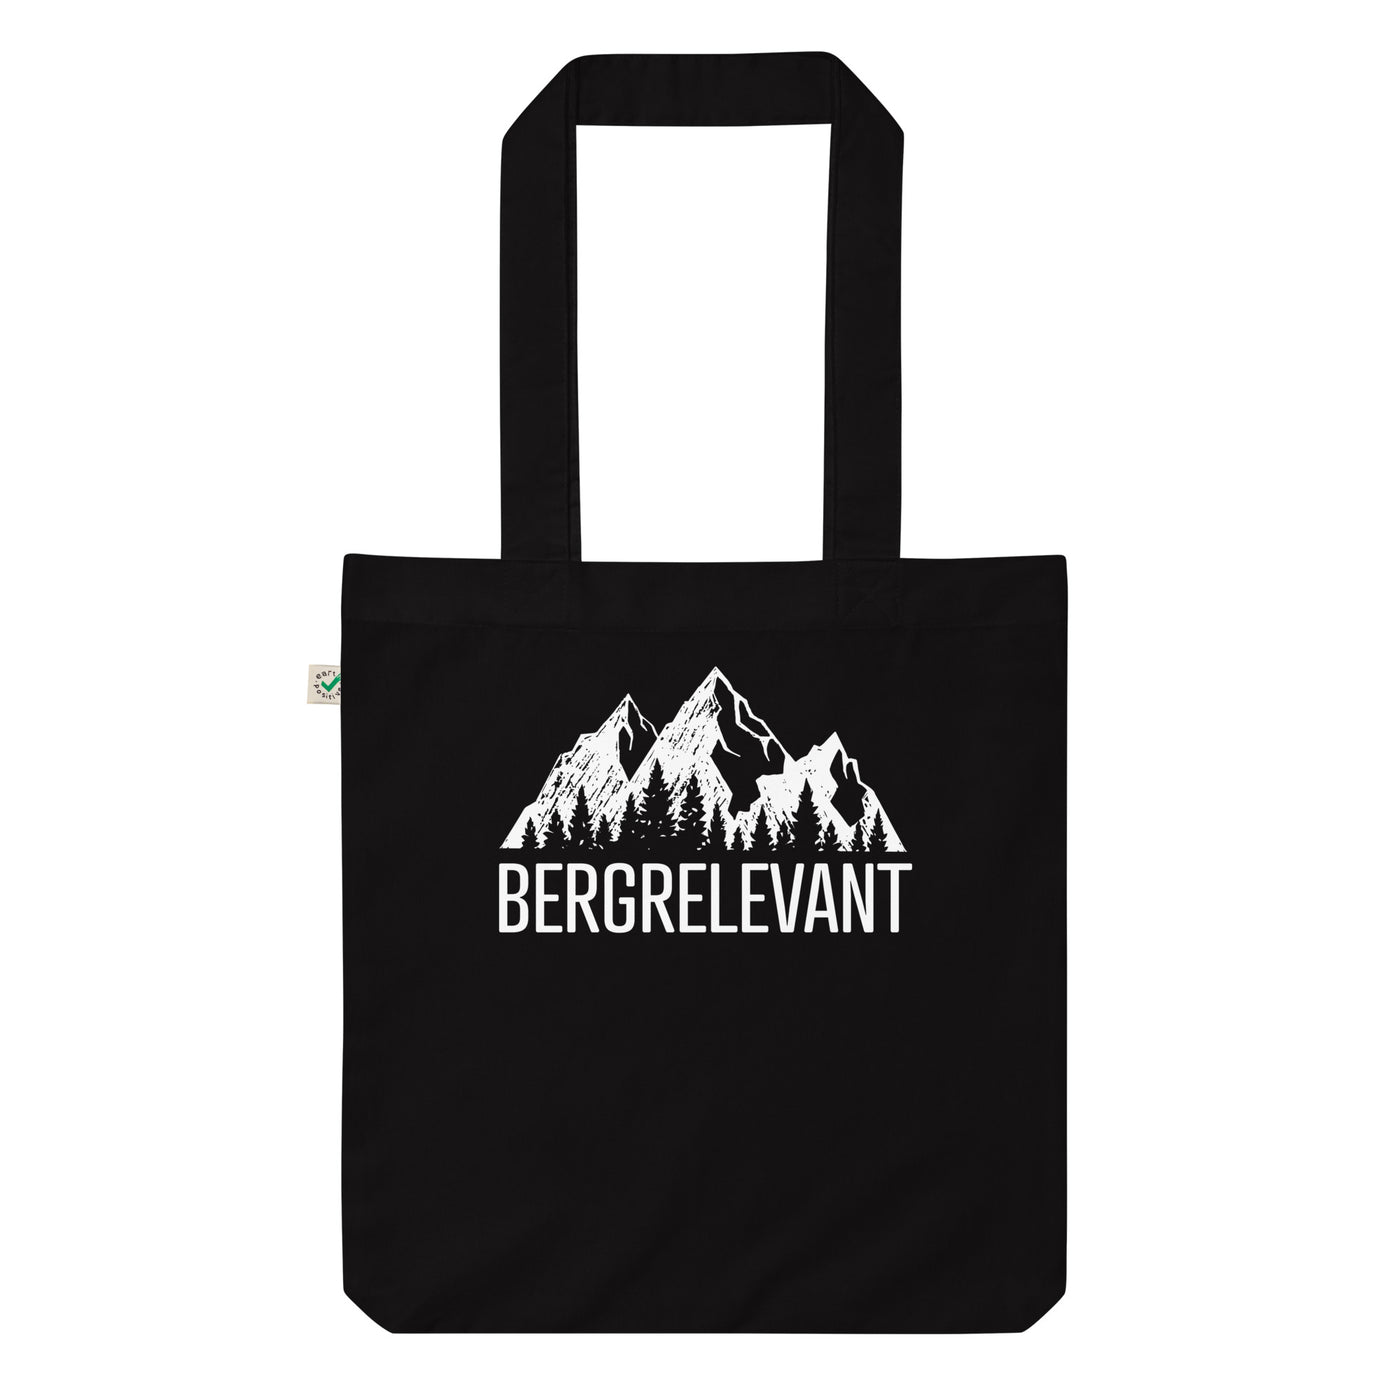 Bergrelevant - Organic Einkaufstasche berge